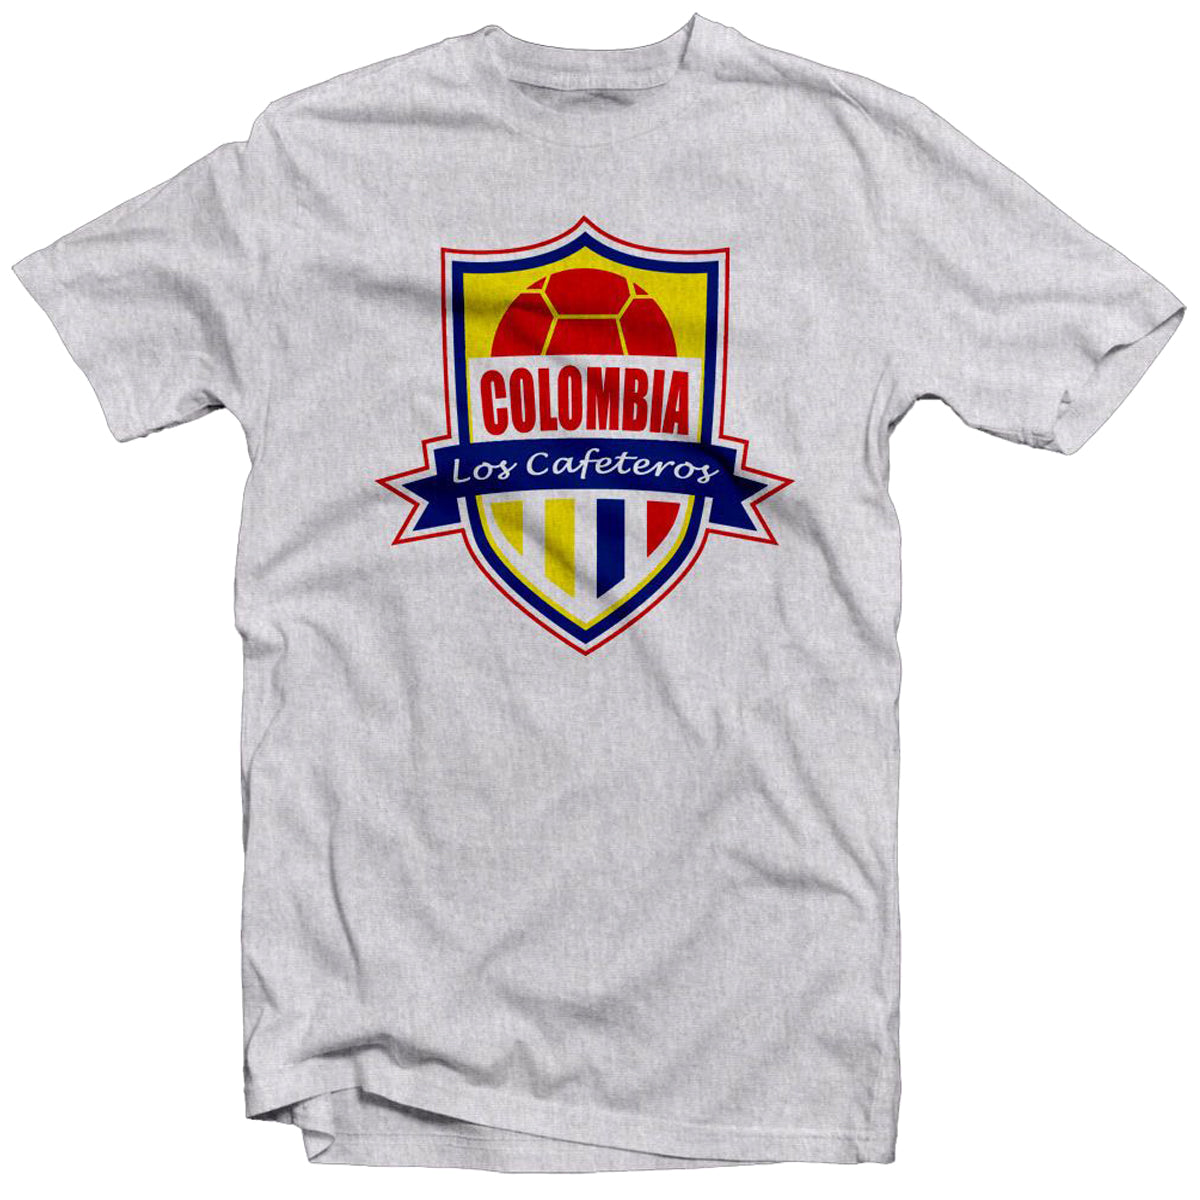 Colombia Los Cafeteros Legend Tee: Escobar T-Shirt 411 